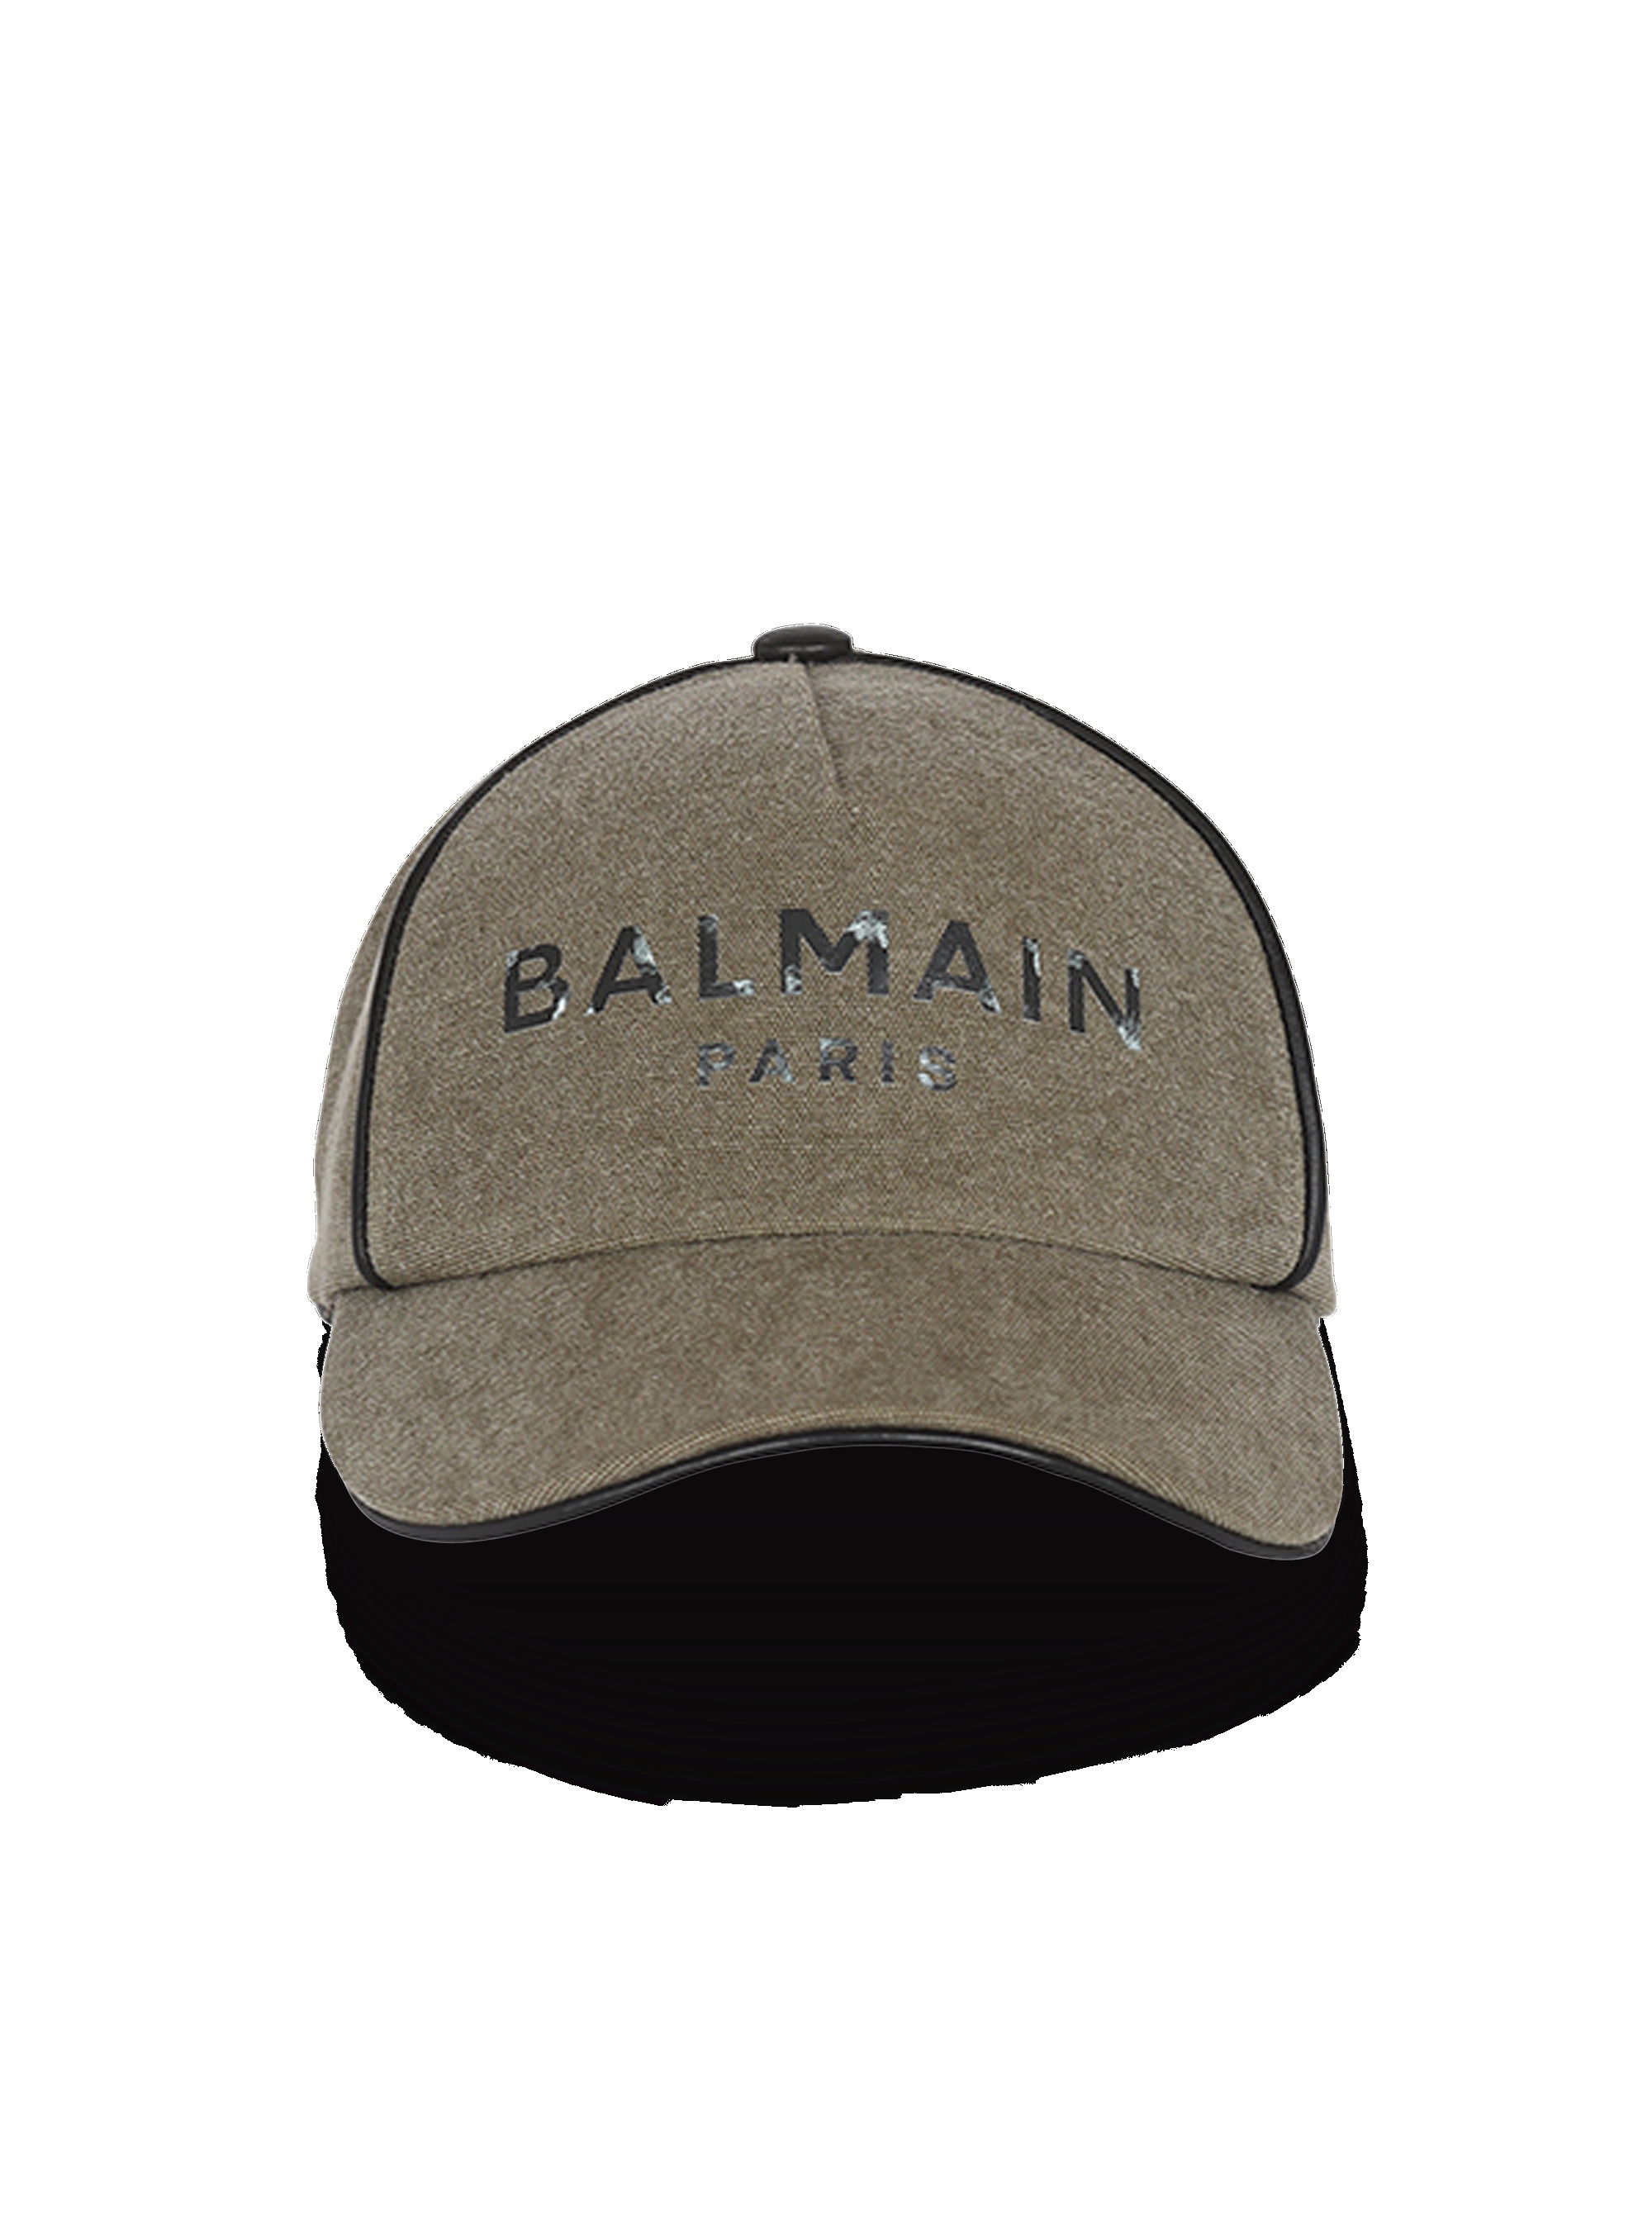 Cotton canvas cap with Balmain Paris logo - 1